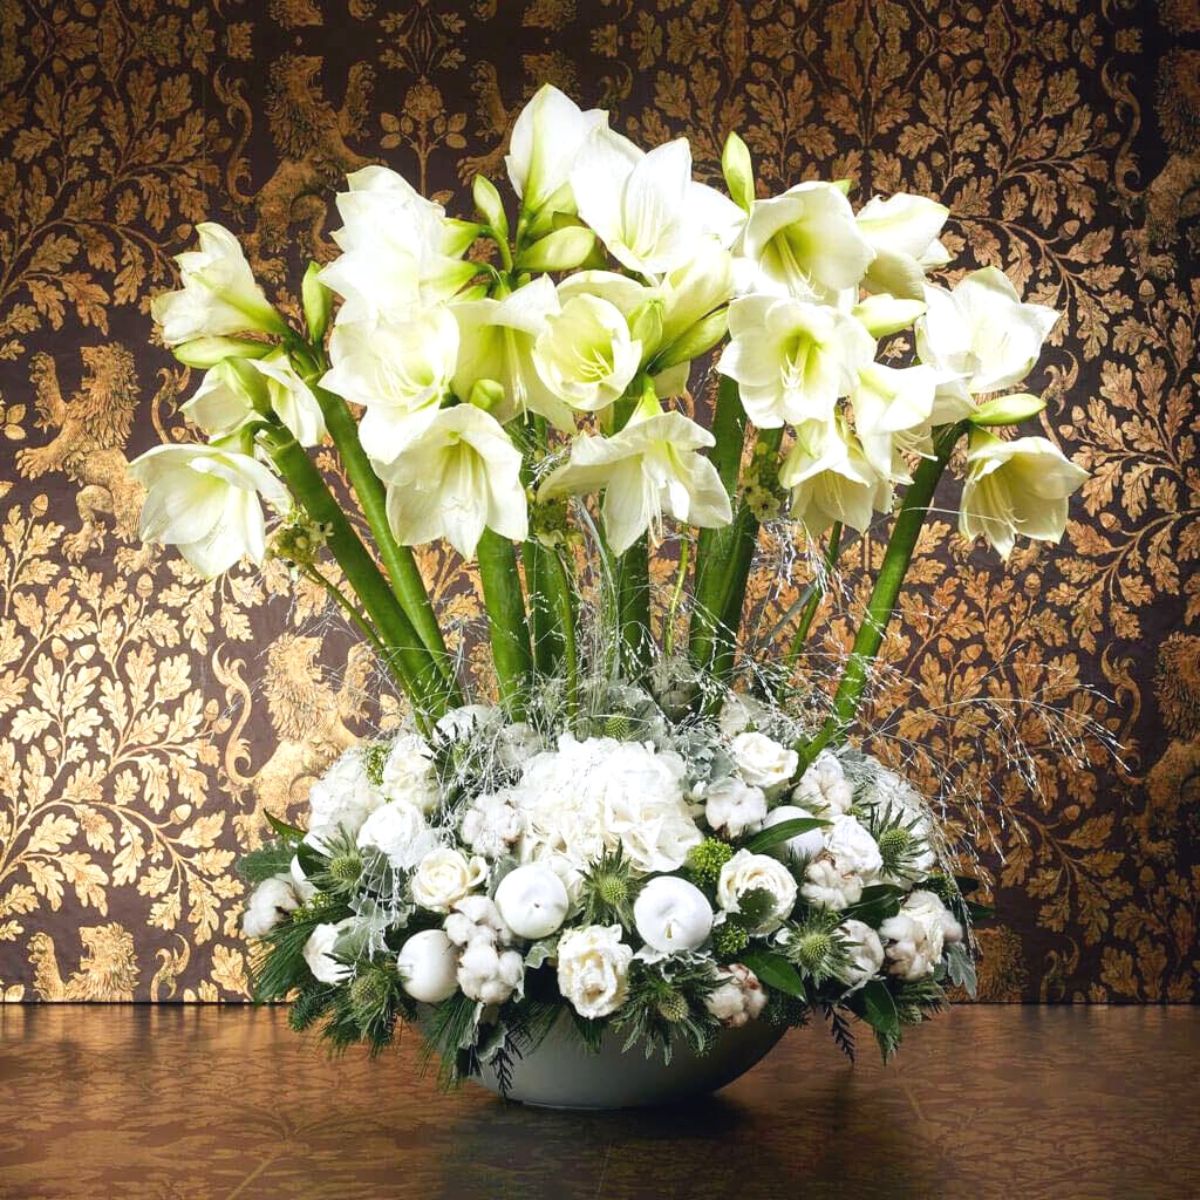 A white amaryllis Christmas floral design